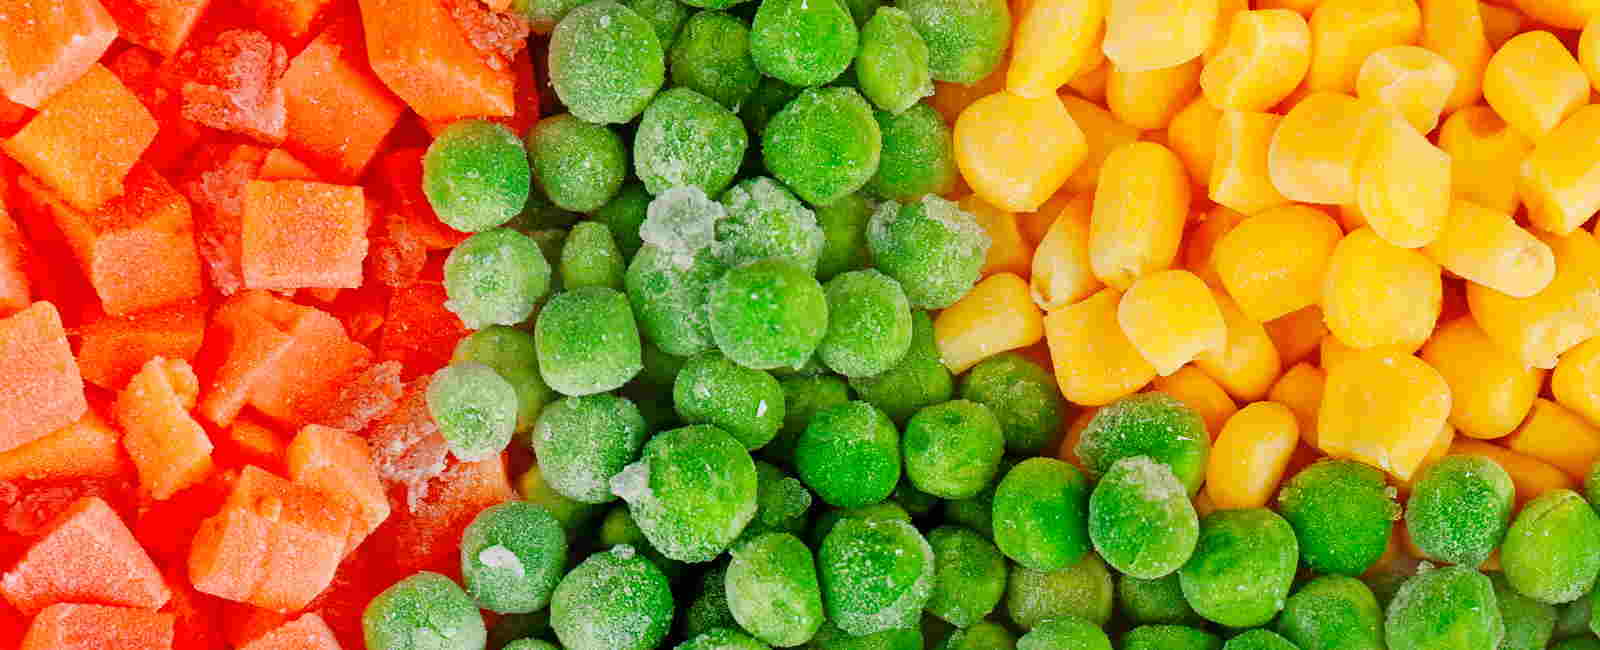 Beneficios de las verduras congeladas para la salud